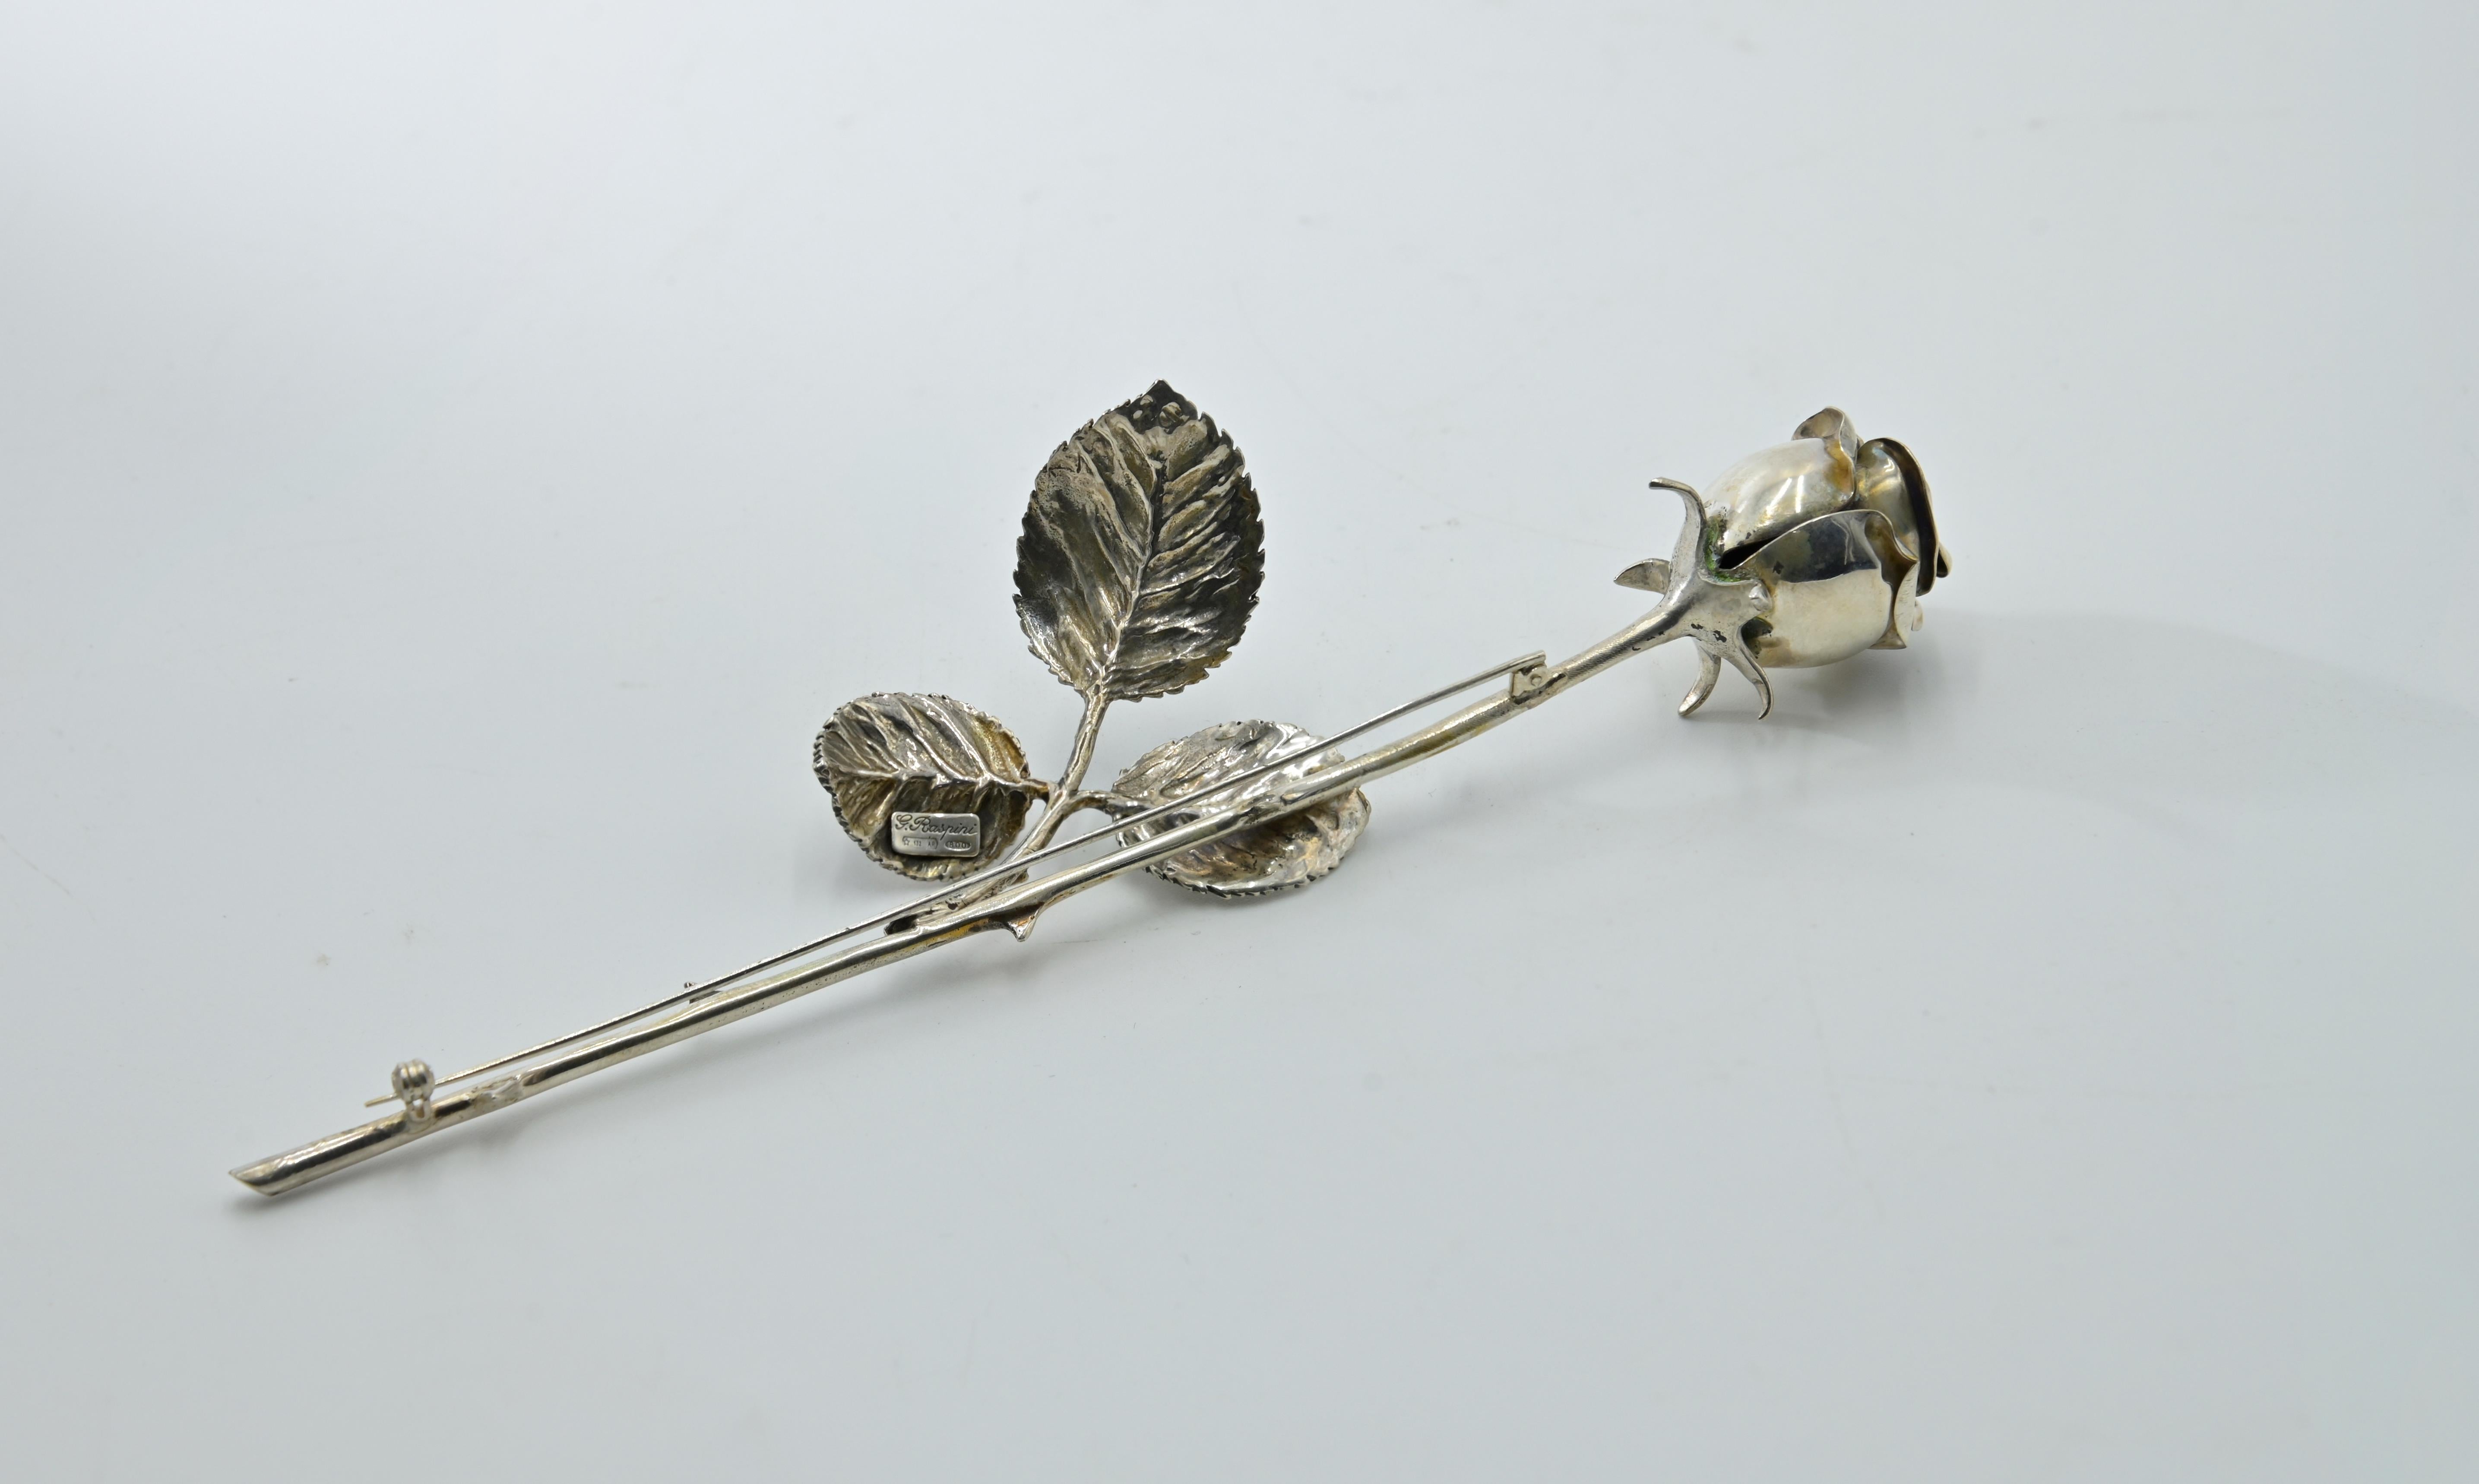 Brosche in Form einer Rose, mit Originaletui.
Realisiert in Italien, Arezzo, von G. Raspini in den 1960er Jahren.

Silber. L. 17,8 cm, 44 g.

Gepunzt mit Garantie- und Herstellermarke sowie Reinheitsgrad 